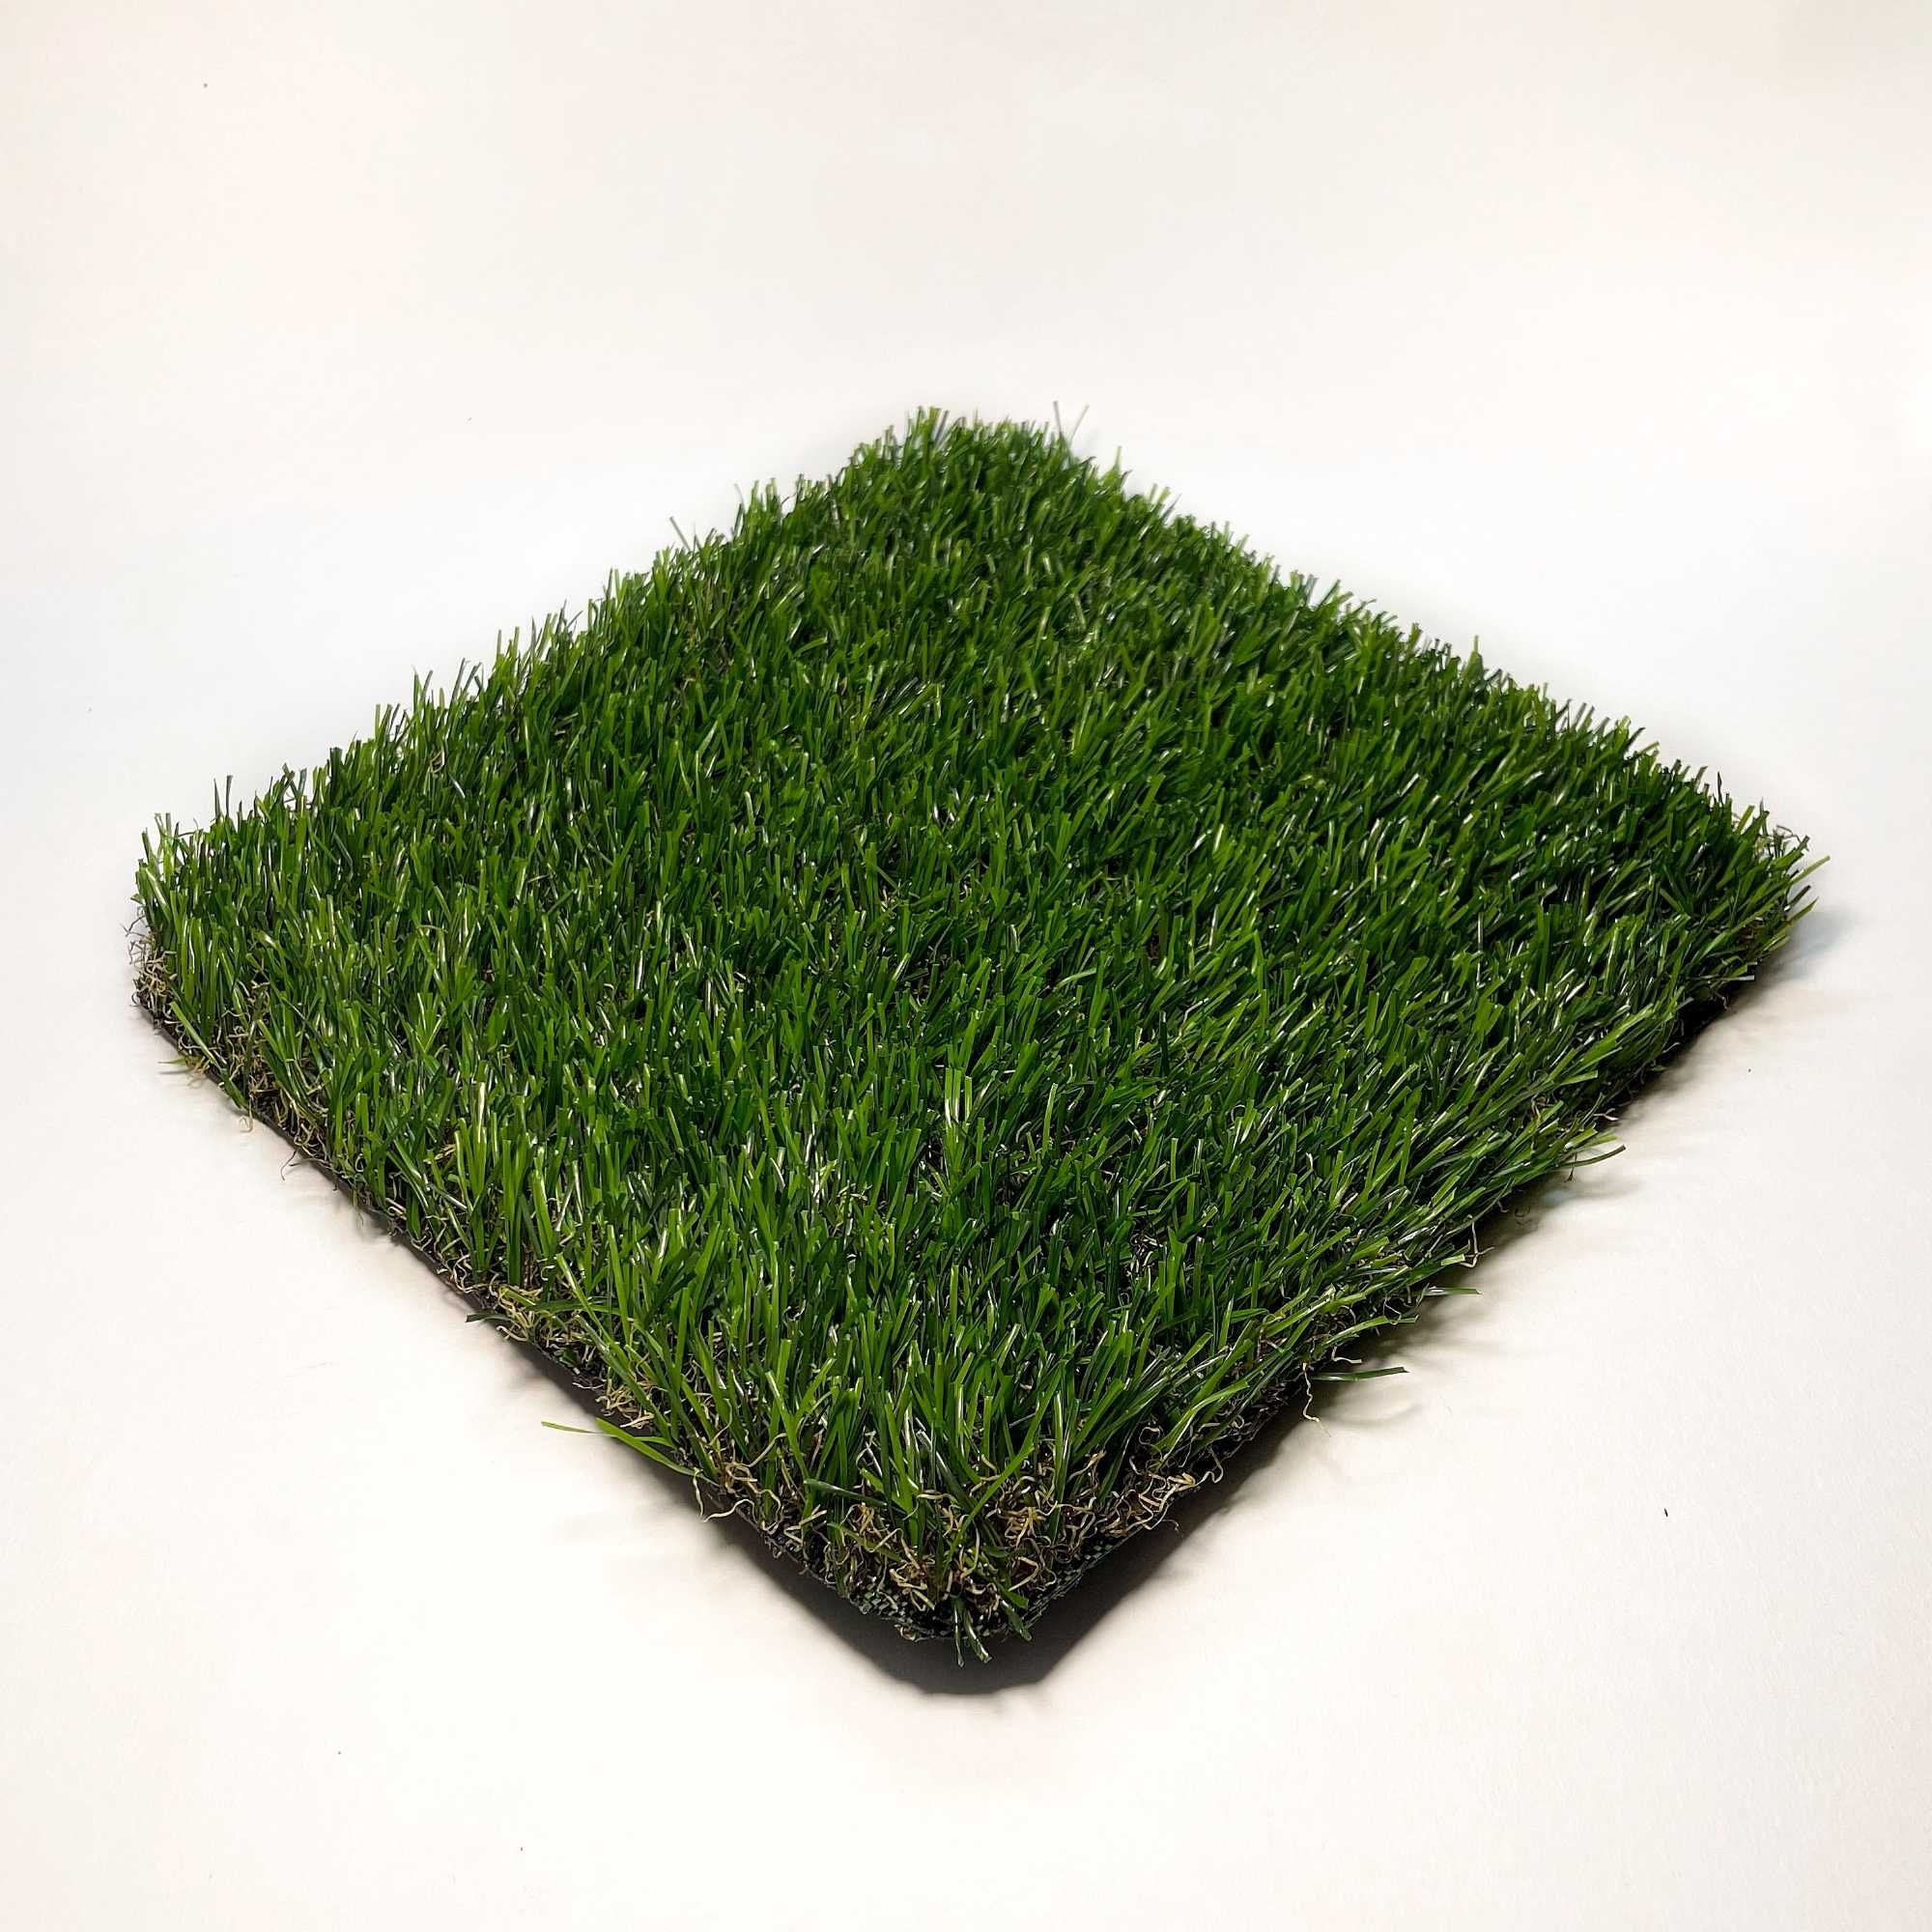 газон футбольный искусственный для футбола для декора обшивки монтаж